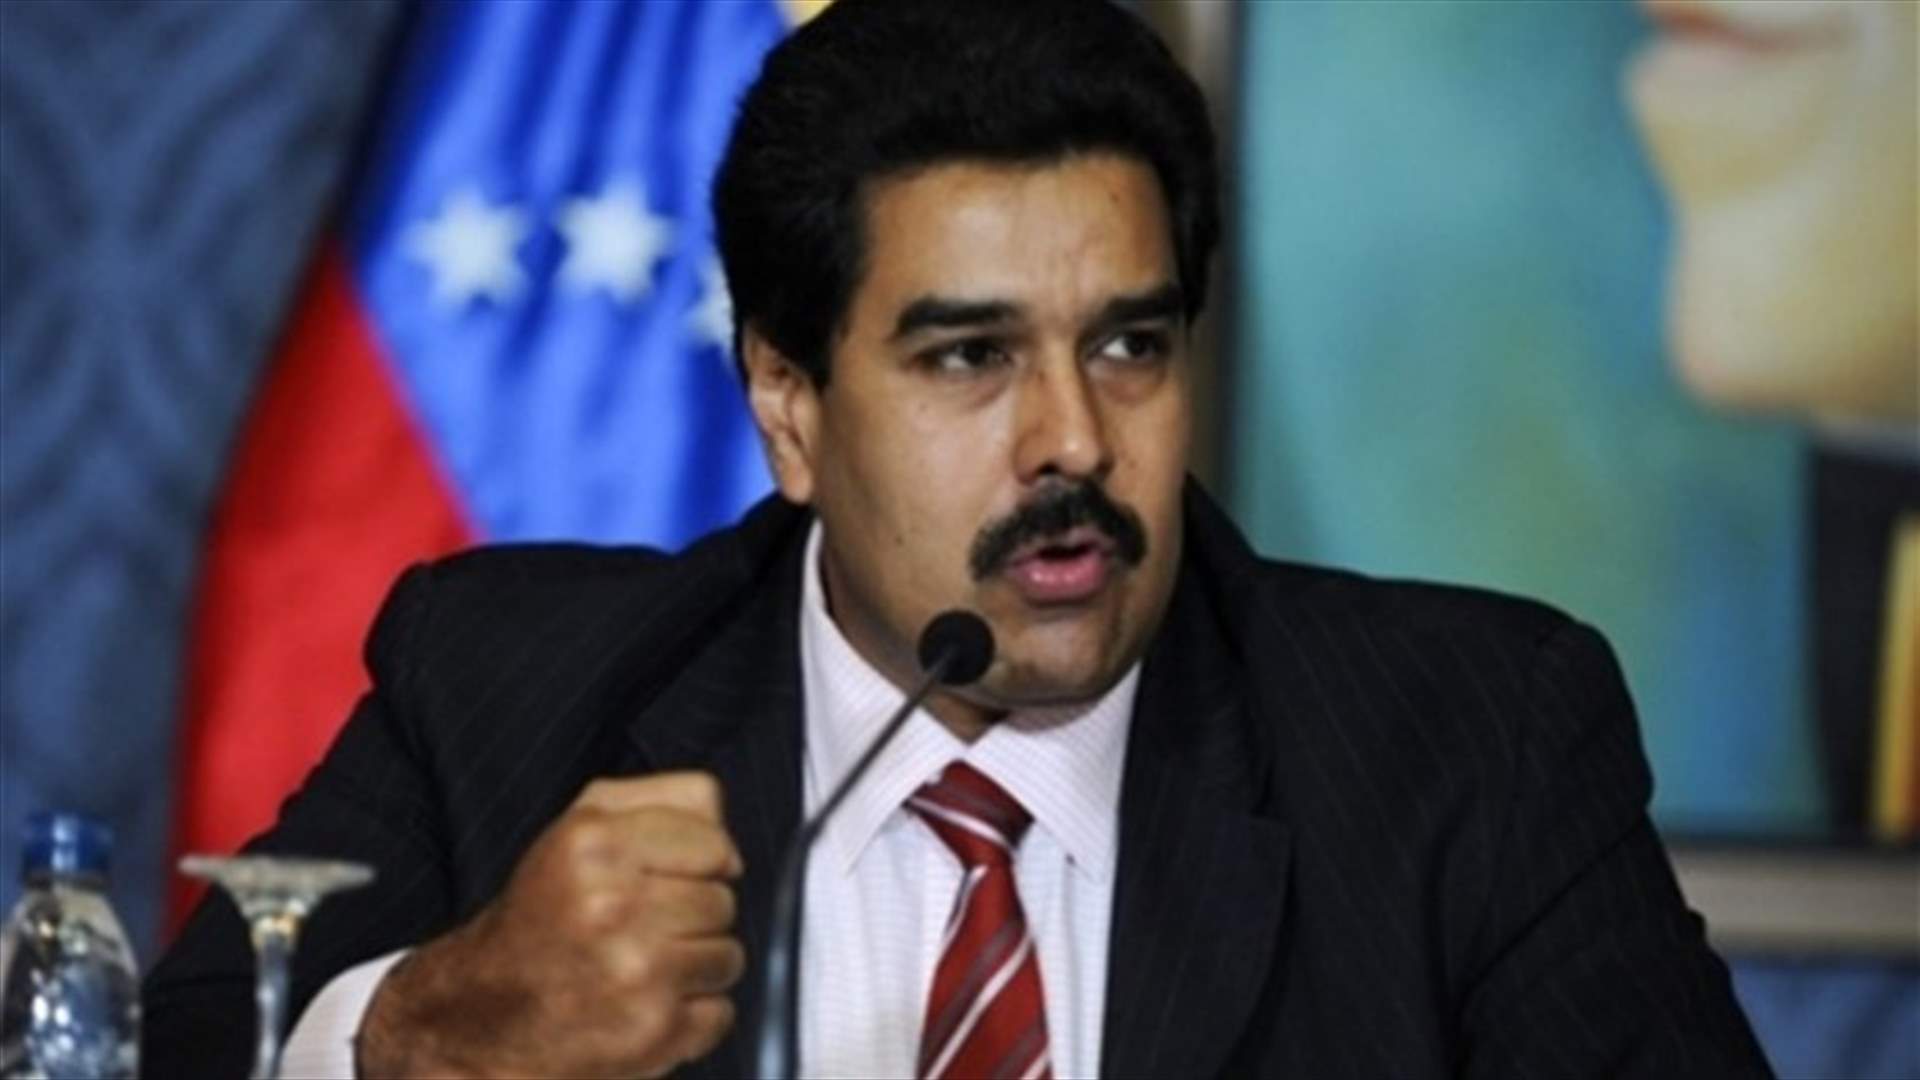 الرئيس الفنزويلي يتهم اليمين بالسعي الى انقلاب